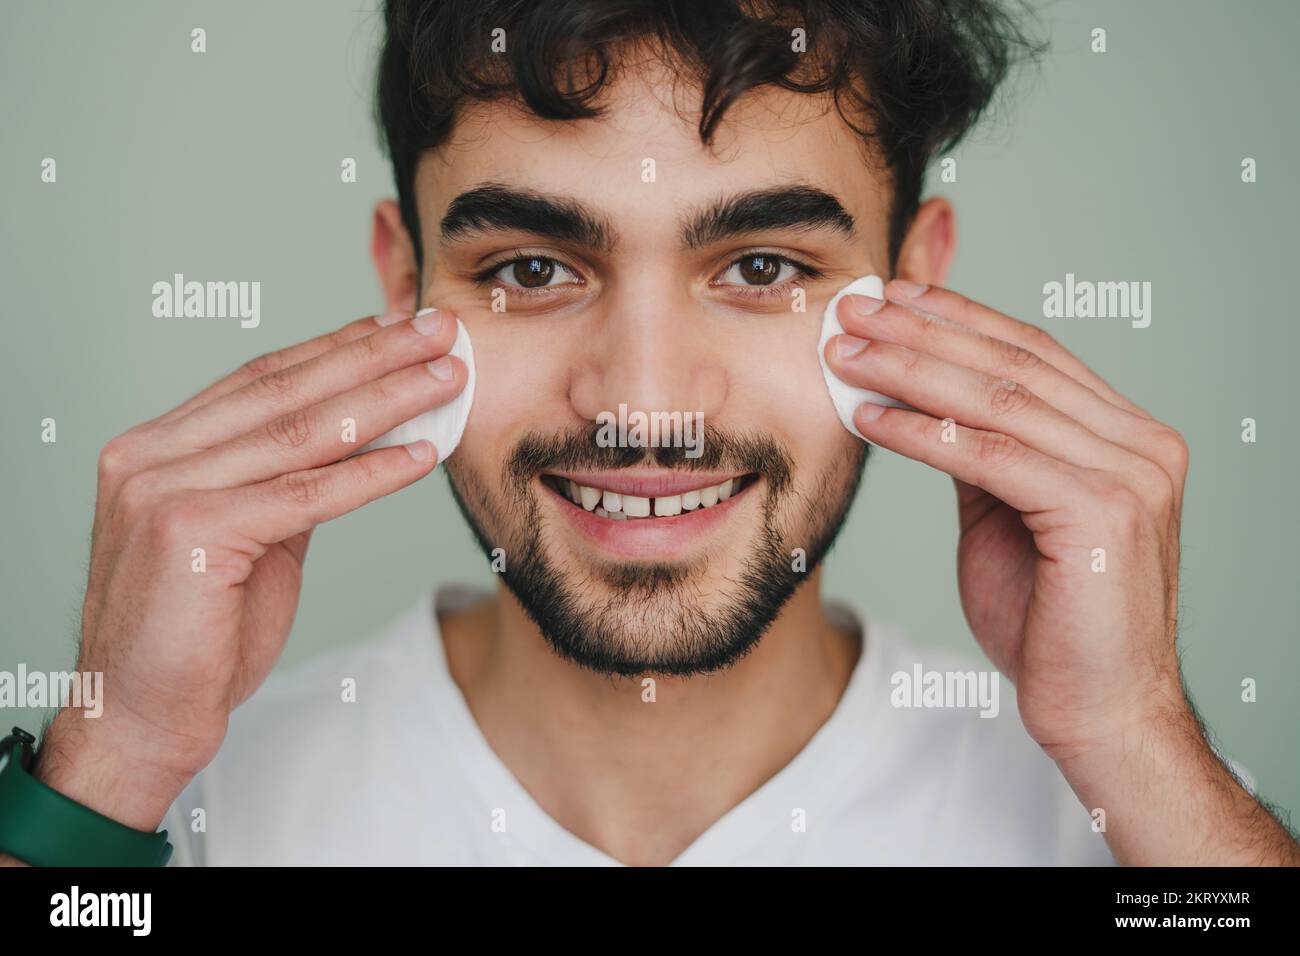 Vue avant portrait d'un homme souriant qui nettoie la peau du visage avec deux tampons de coton regardant l'appareil photo sur fond gris. Portrait isolé Banque D'Images